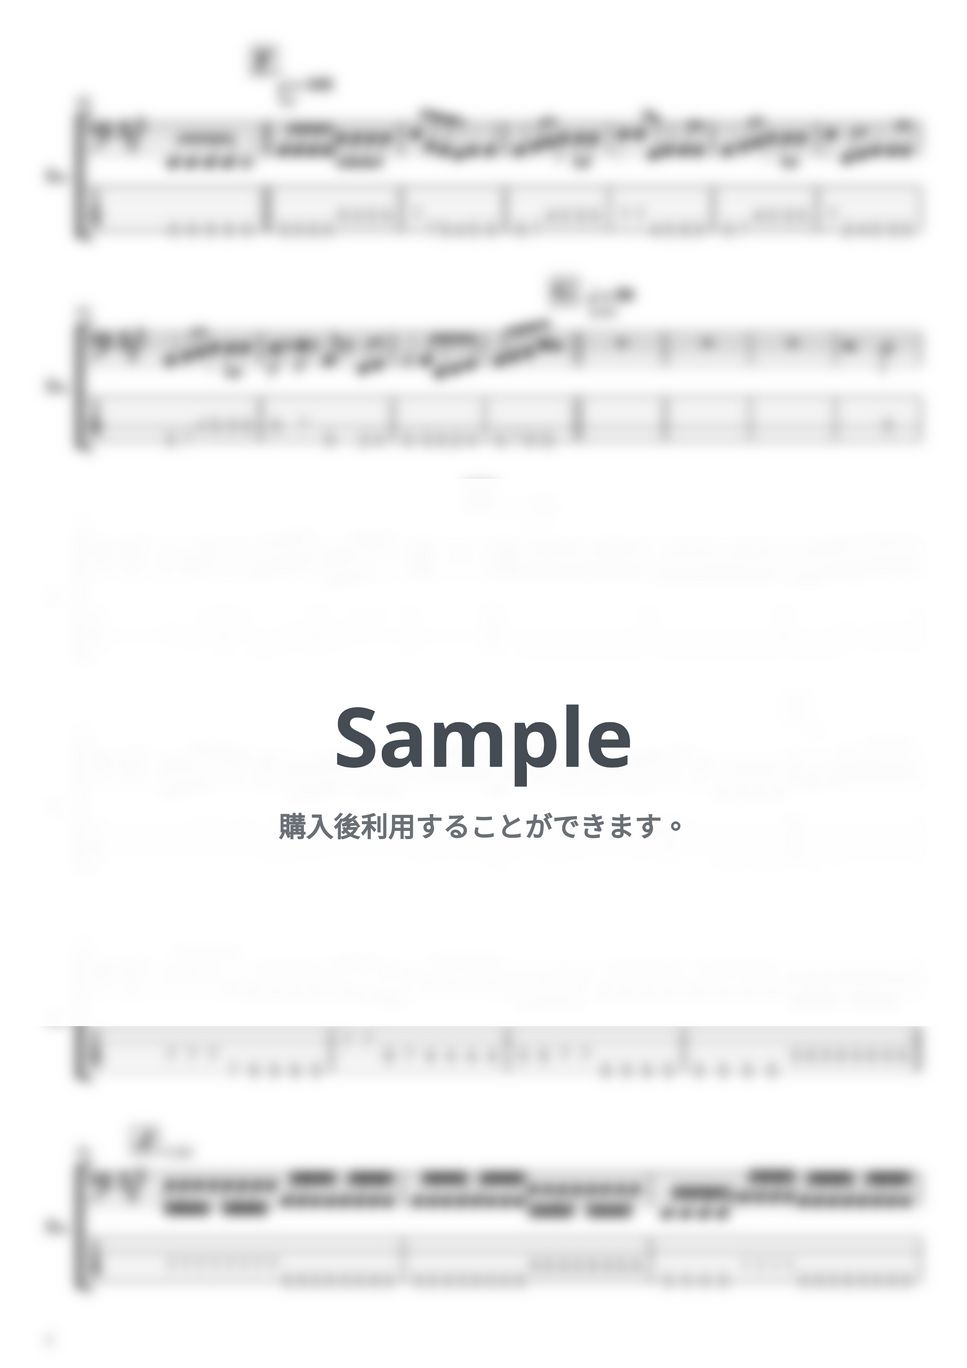 ハルカミライ - ピンクムーン (ベースTAB譜) by やまさんルーム